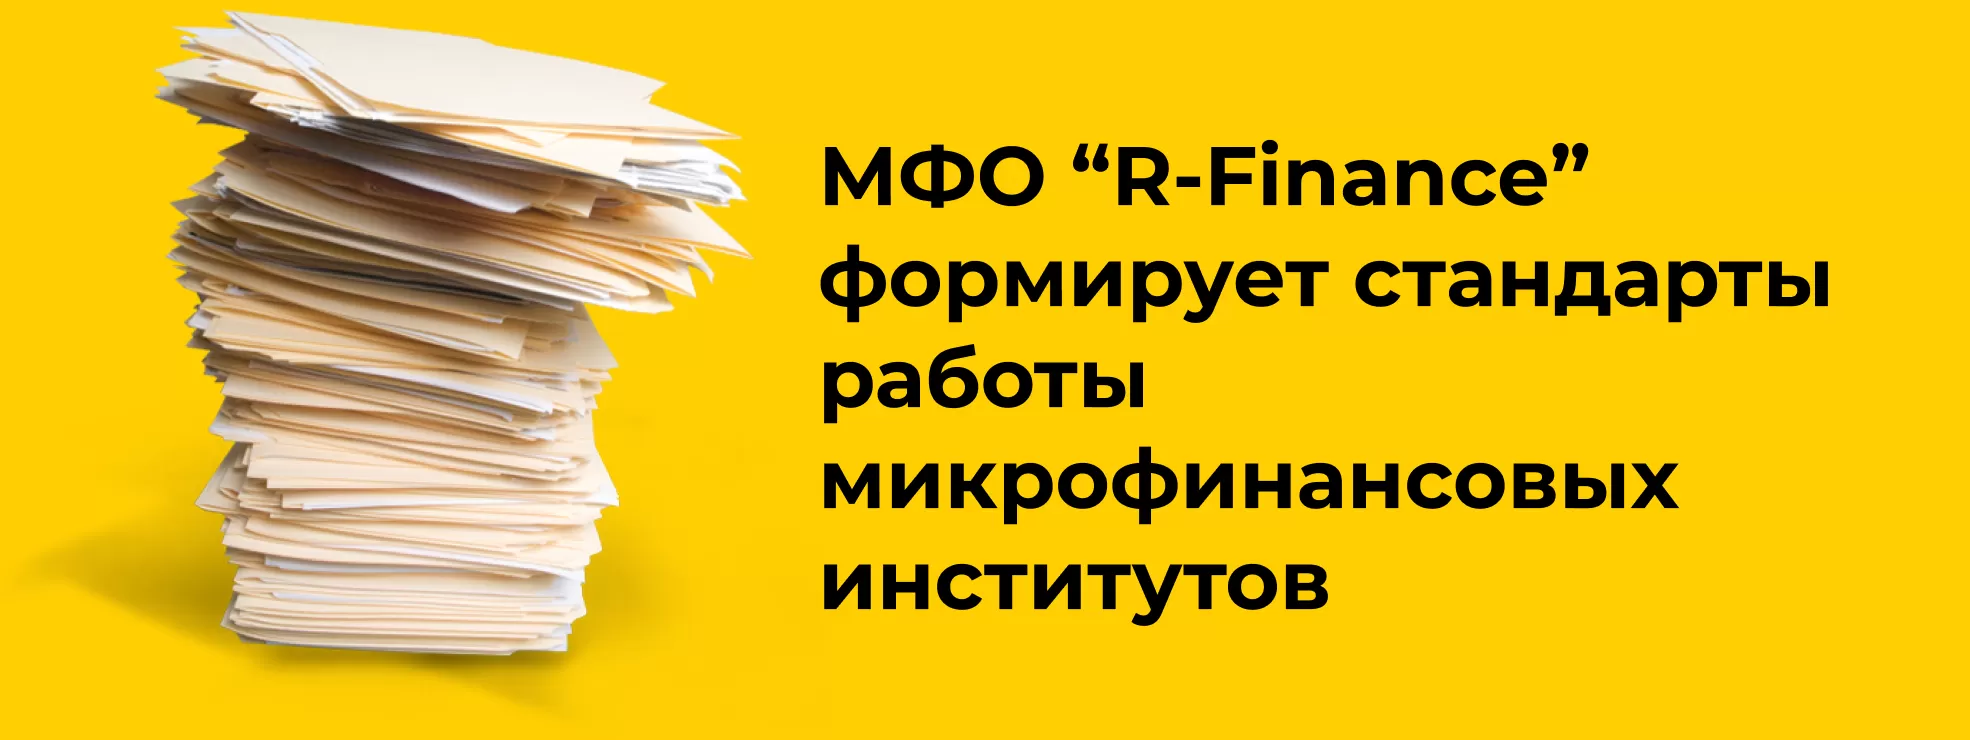 МФО "R-Finance" формирует стандарты работы микрофинансовых институтов